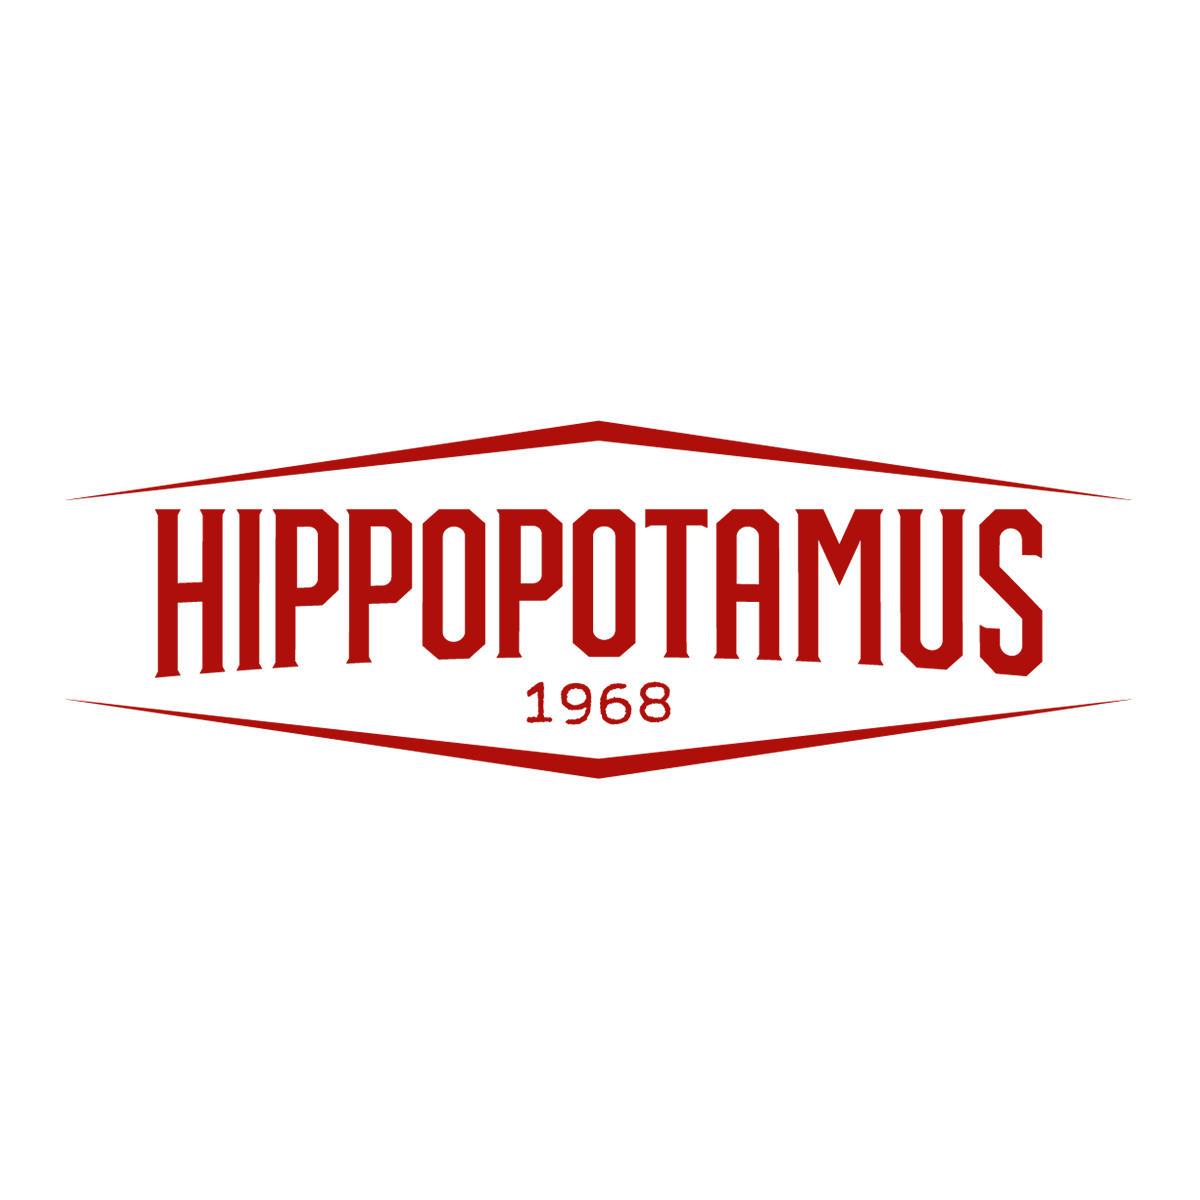 Hippopotamus Steakhouse Bonneuil Sur Marne